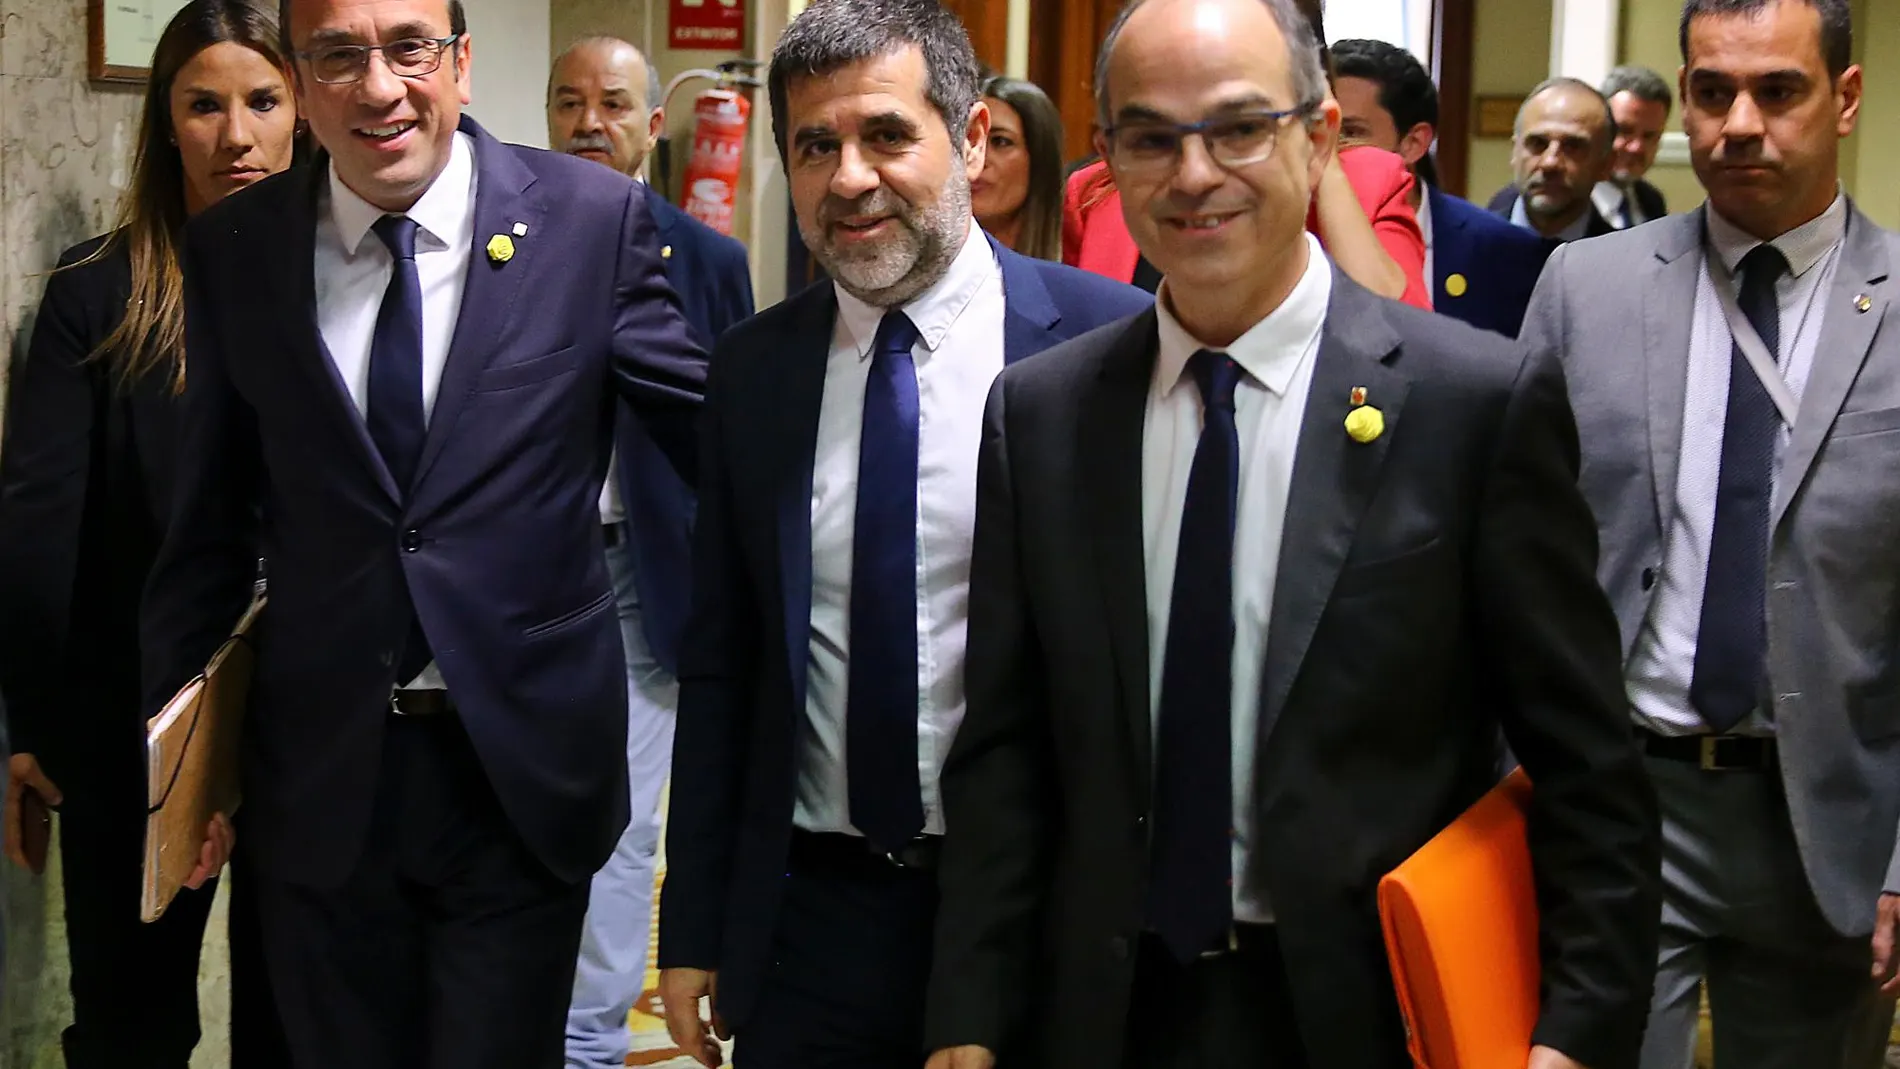 Jordi Turull, Josep Rull y Jordi Sànchez en el Congreso de los Diputados el pasado 20 de mayo/C. Pastrano